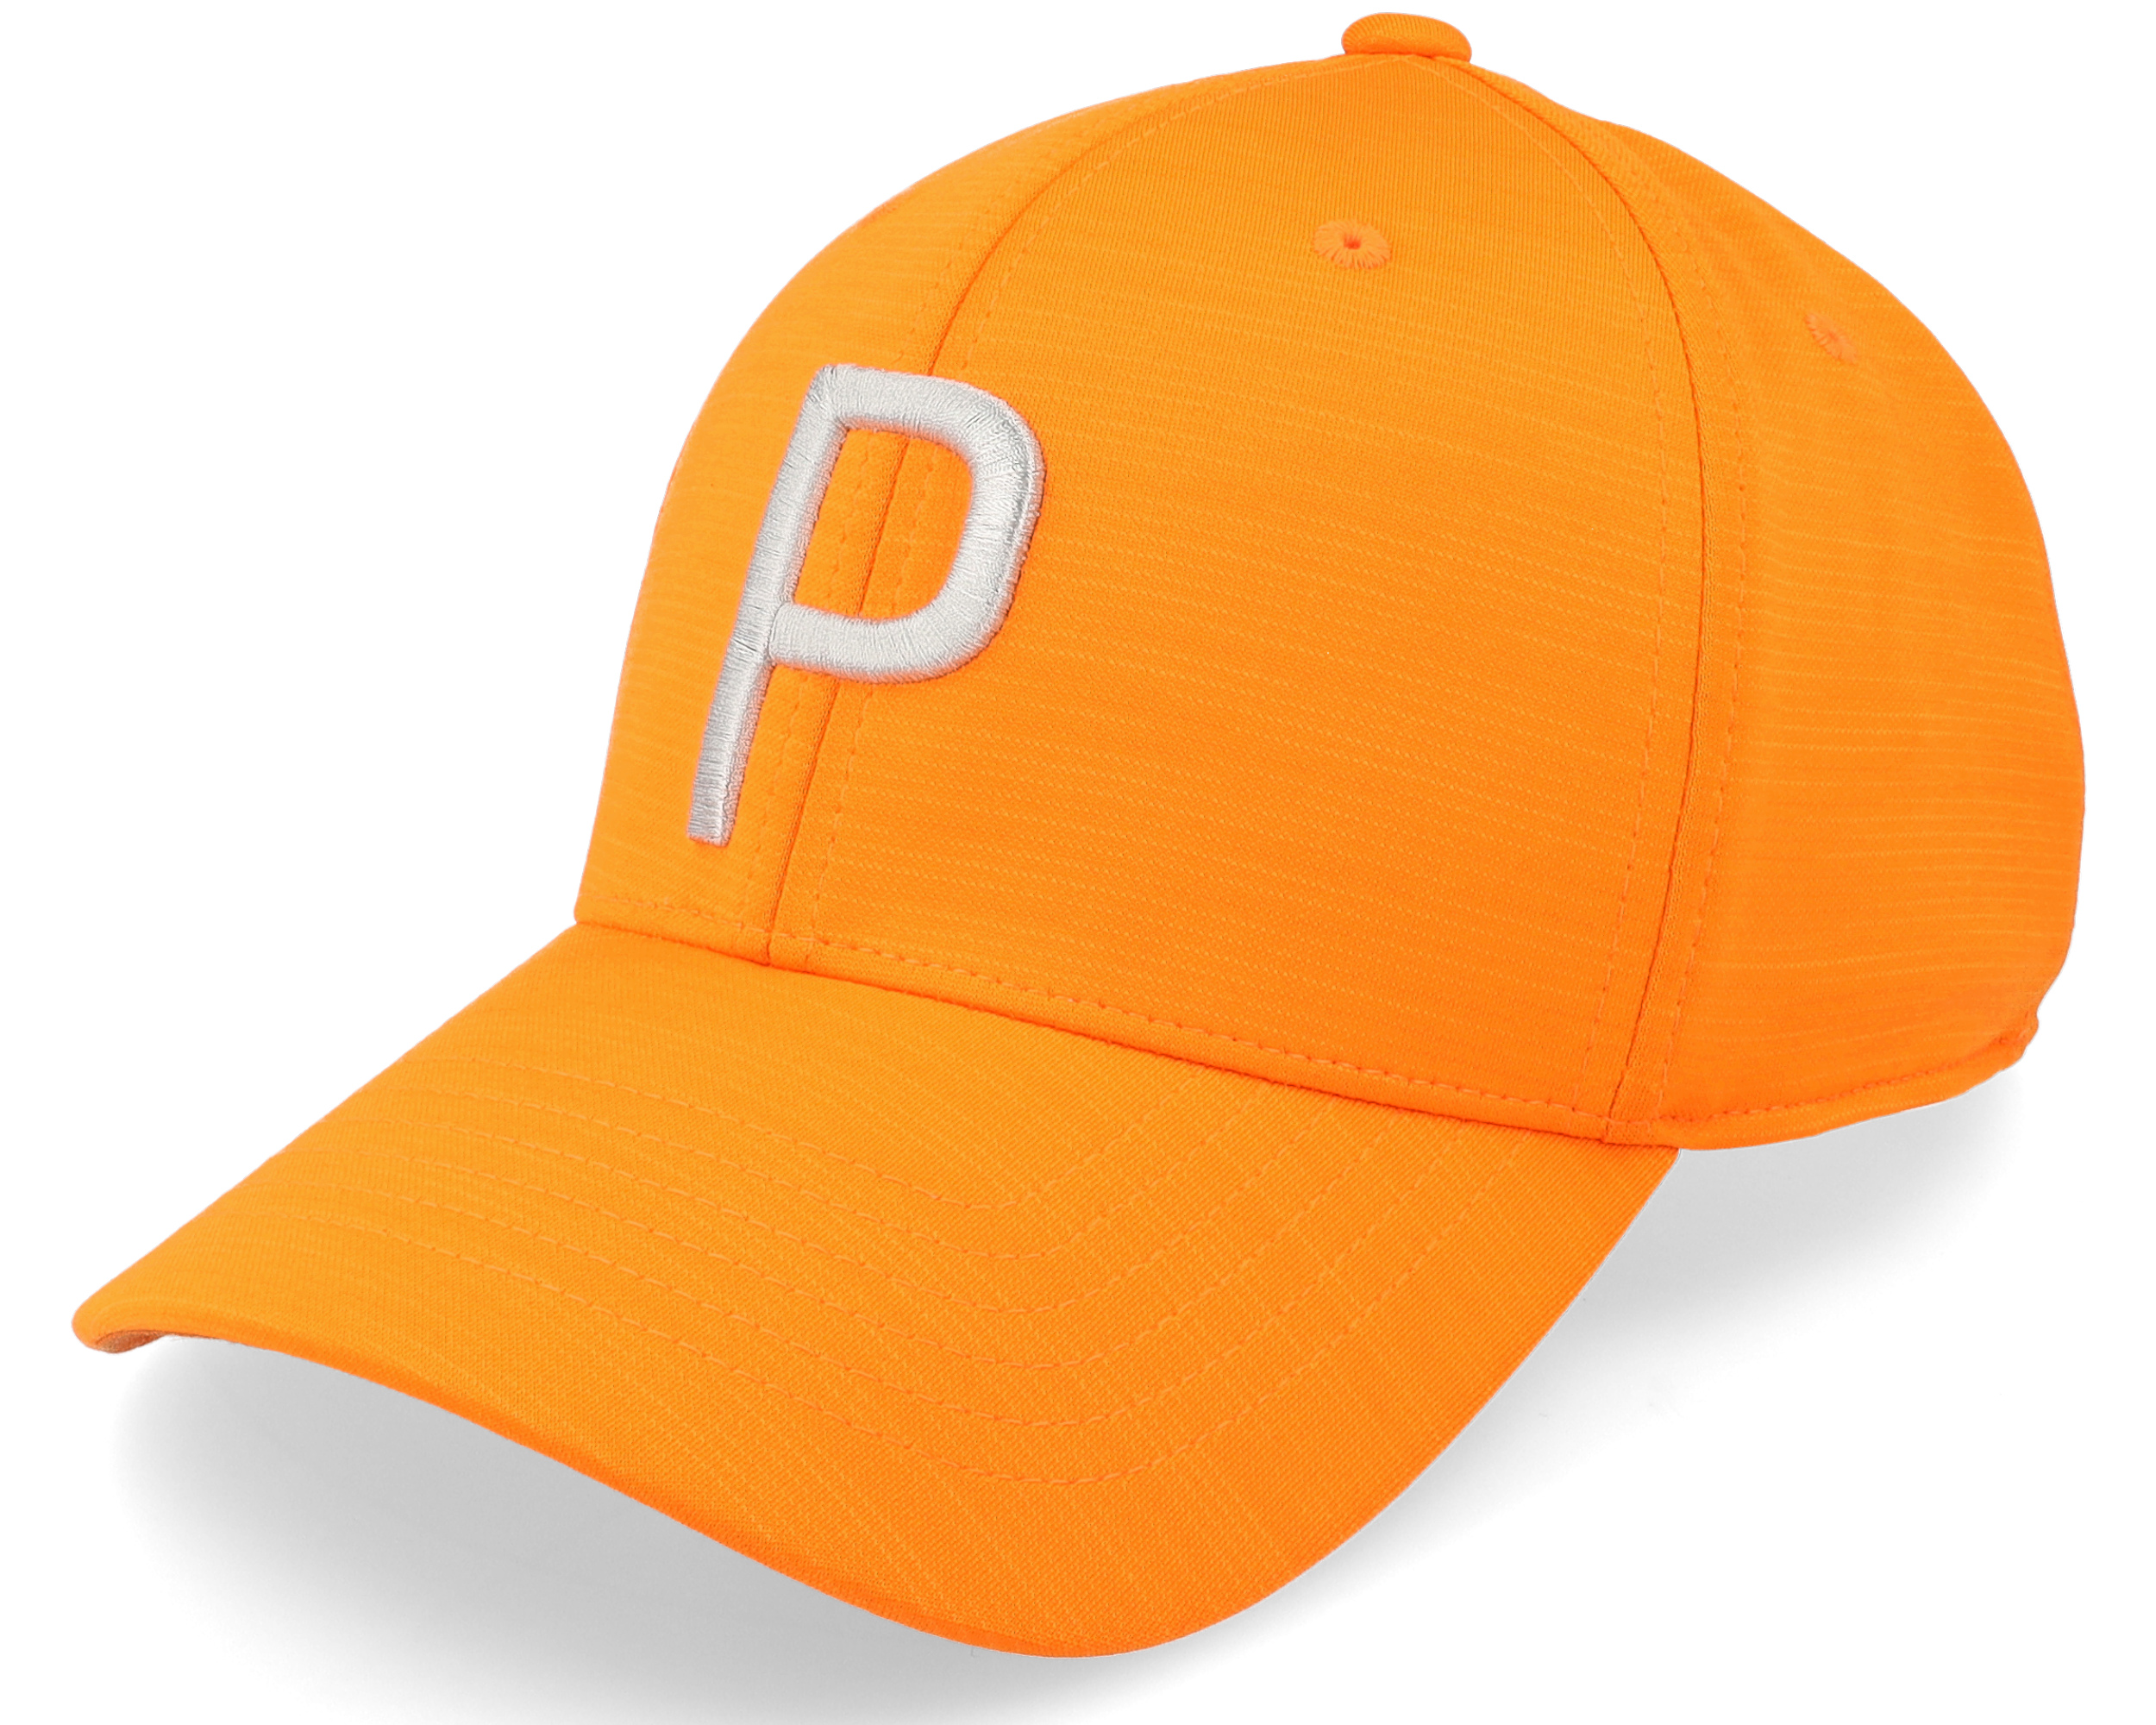 Puma Rickie cap Orange/Cool Gray Cap - Mid P Adjustable